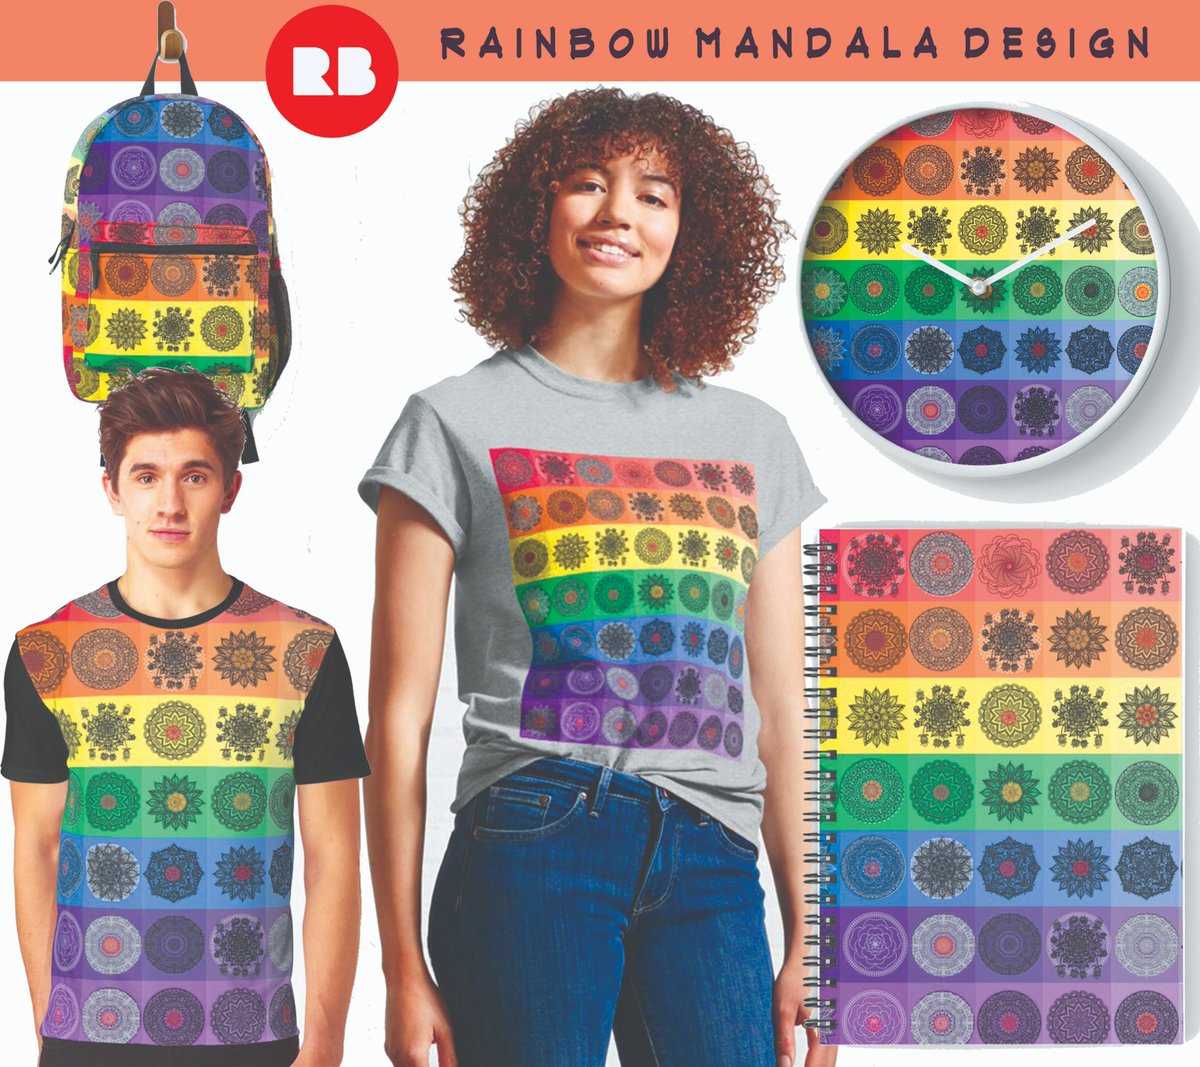 Mandala with rainbow #universalstudios 
#mandala #mandalaart #mandalas #mándala #mandala #redbubble #redbubbleartist #fashion #fashionstyle #fashionblogger #style #styleblogger #textile #textiledesign #modern #world #trending #life #rainbow #rainbowaesthetic #universomakeup